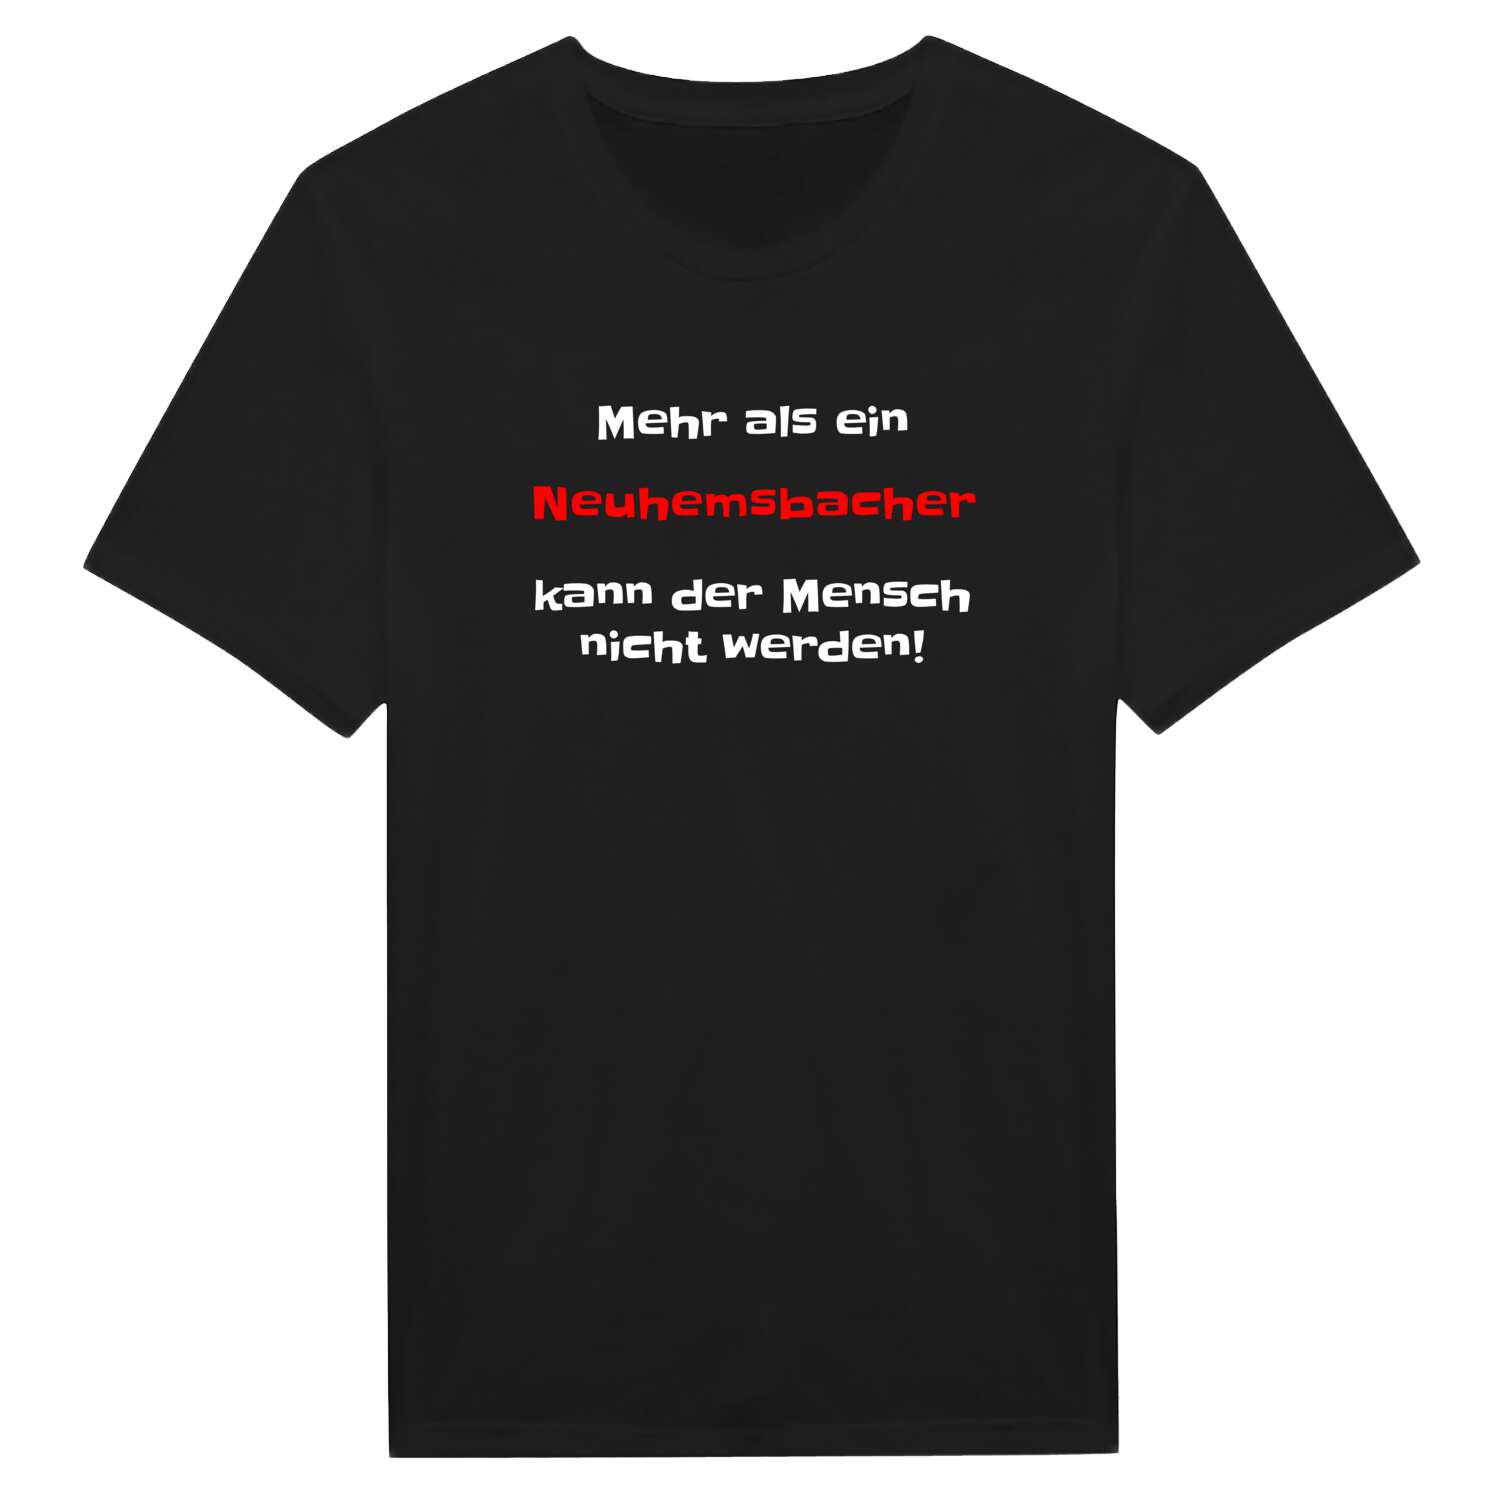 Neuhemsbach T-Shirt »Mehr als ein«